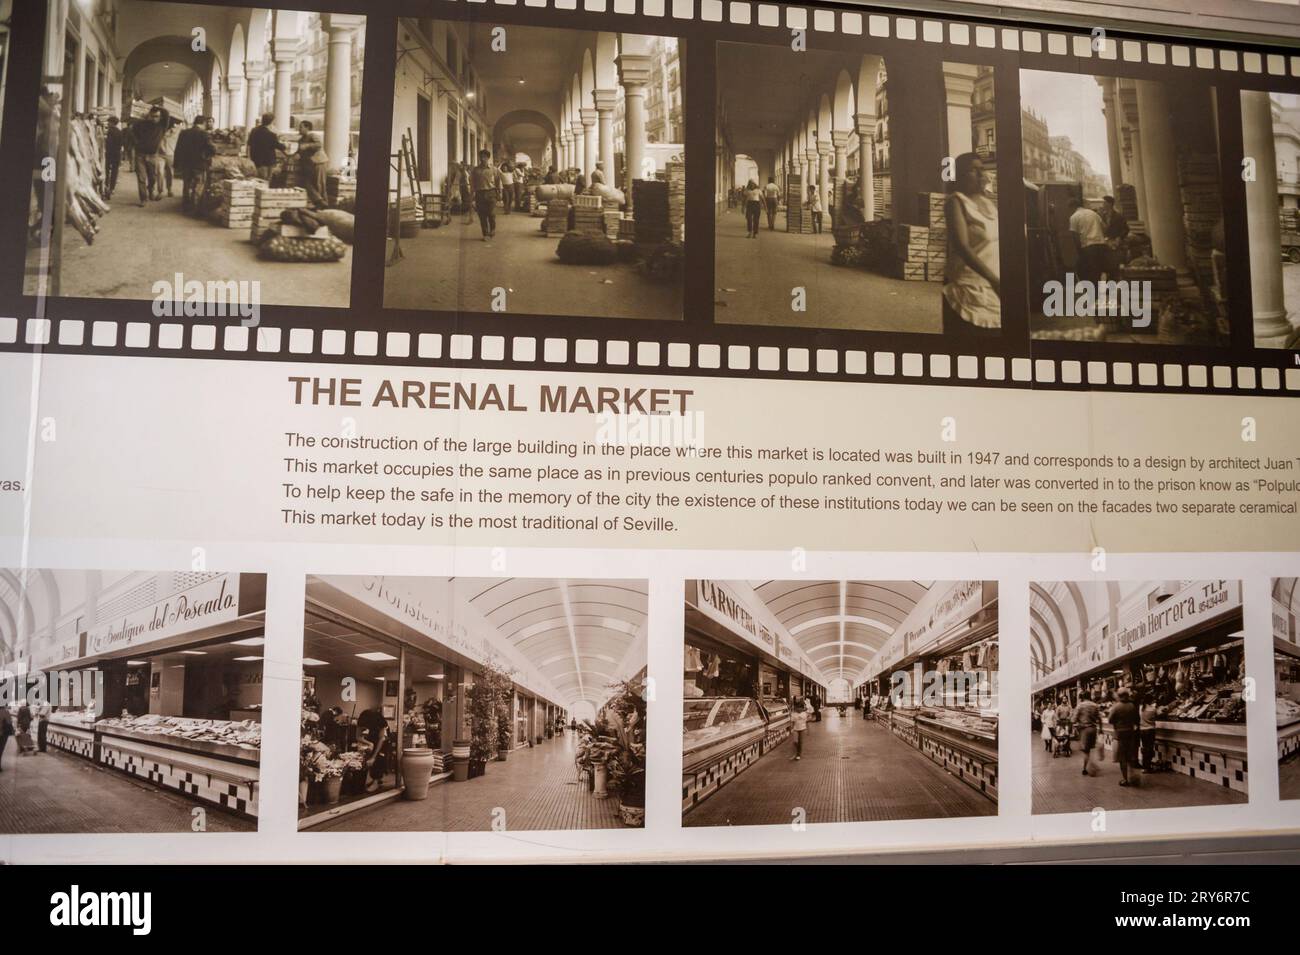 Siviglia, Spagna, dettaglio, poster pubblicitario mostra di storia all'interno del mercato pubblico, 'mercato El Arenal', nel centro storico, foto degli archivi storici Foto Stock